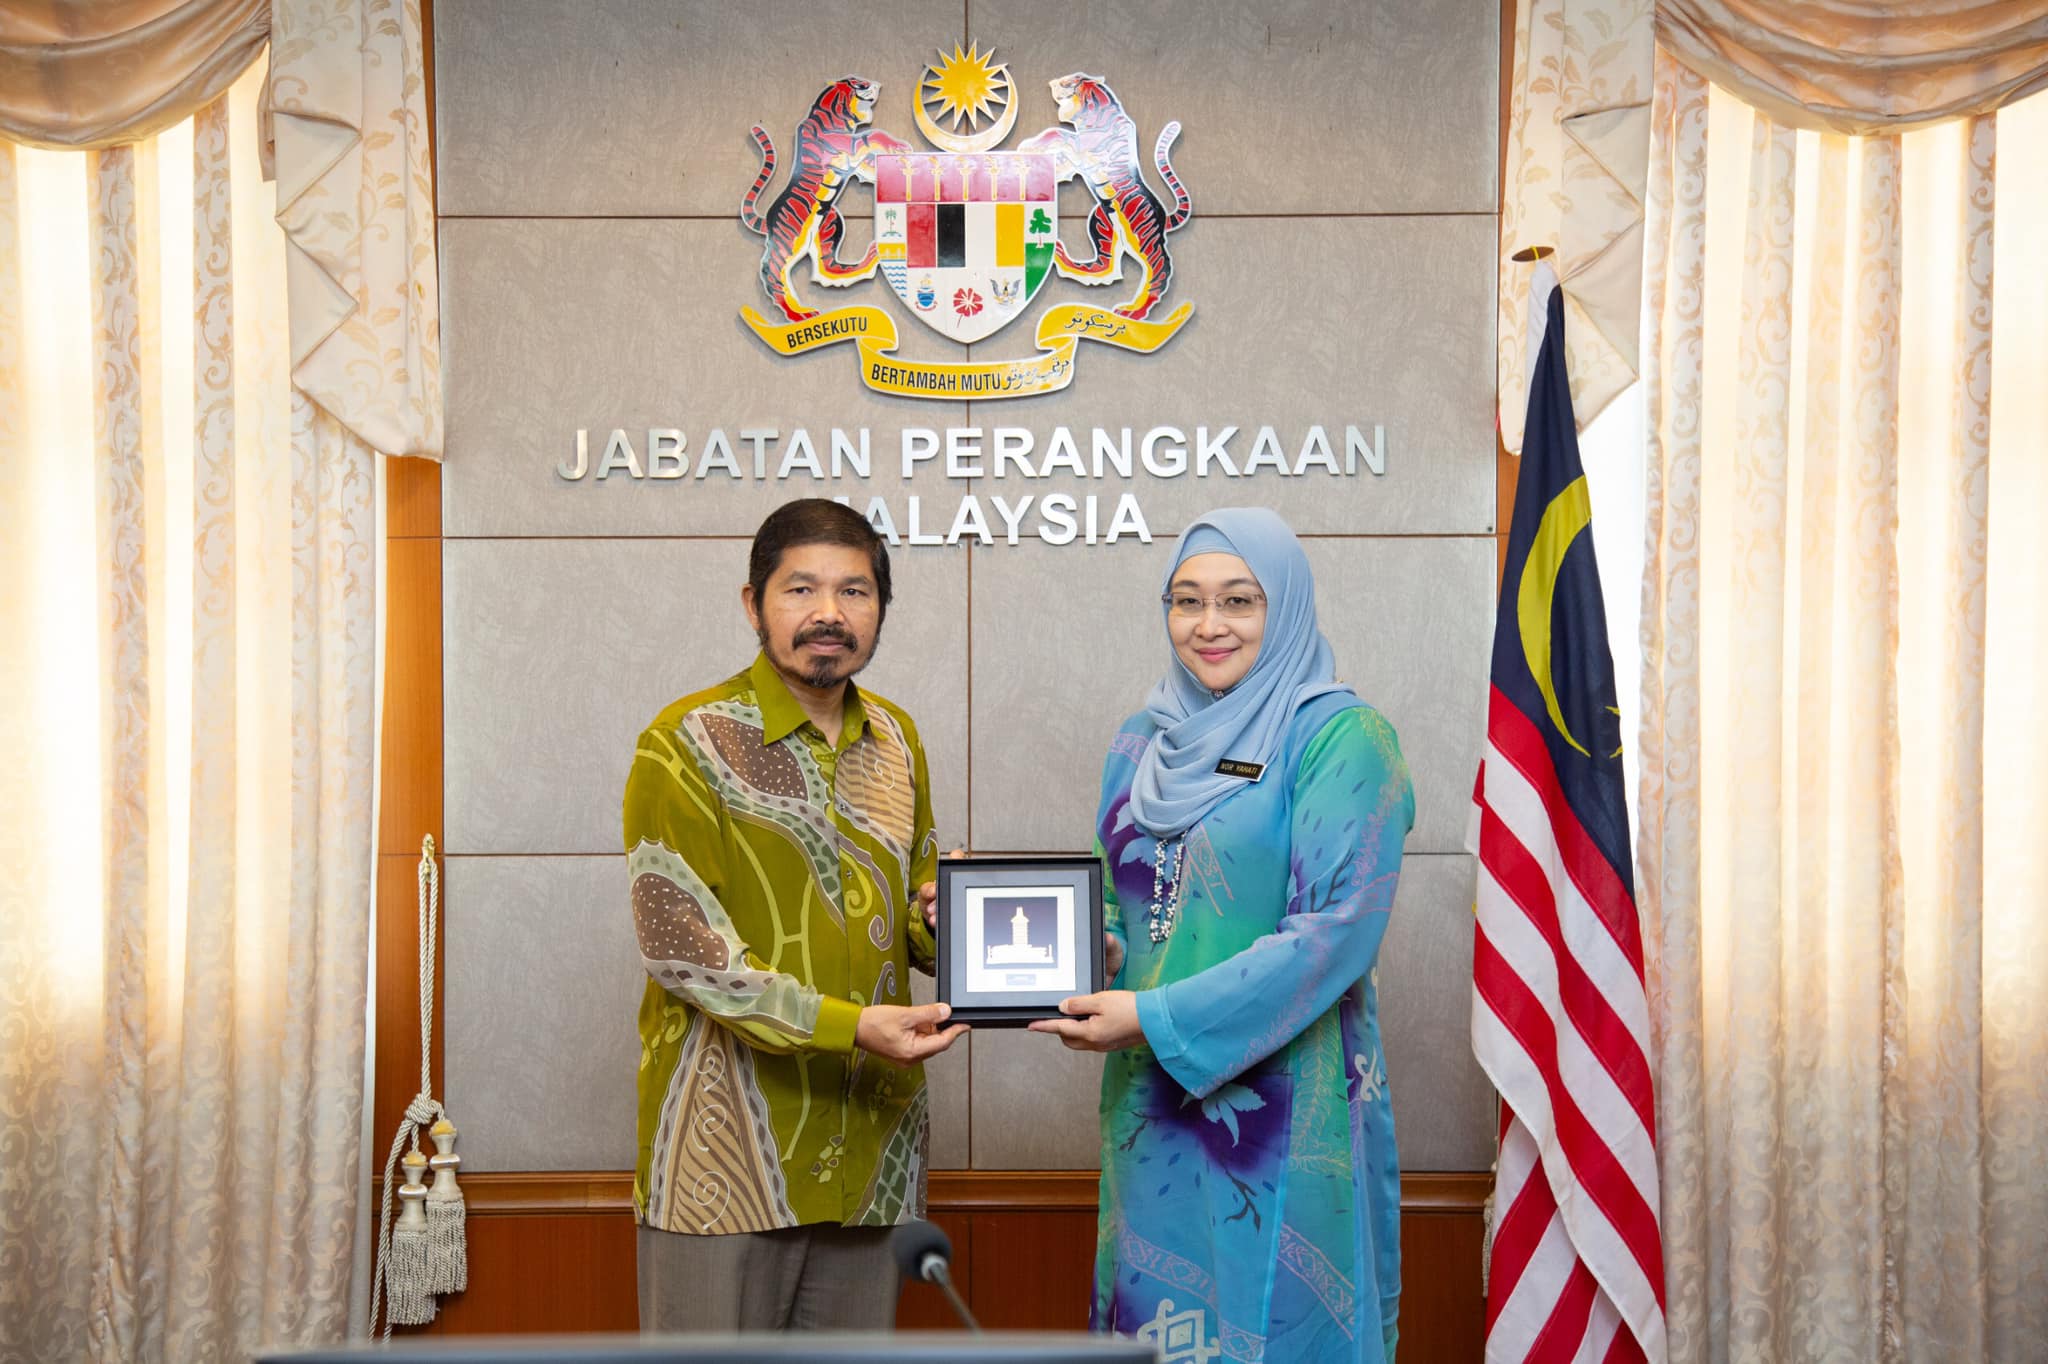 Kunjungan hormat ke atas YBhg. Dato’ Sri Dr. Mohd Uzir Mahidin, Ketua Perangkawan Malaysia (DOSM)